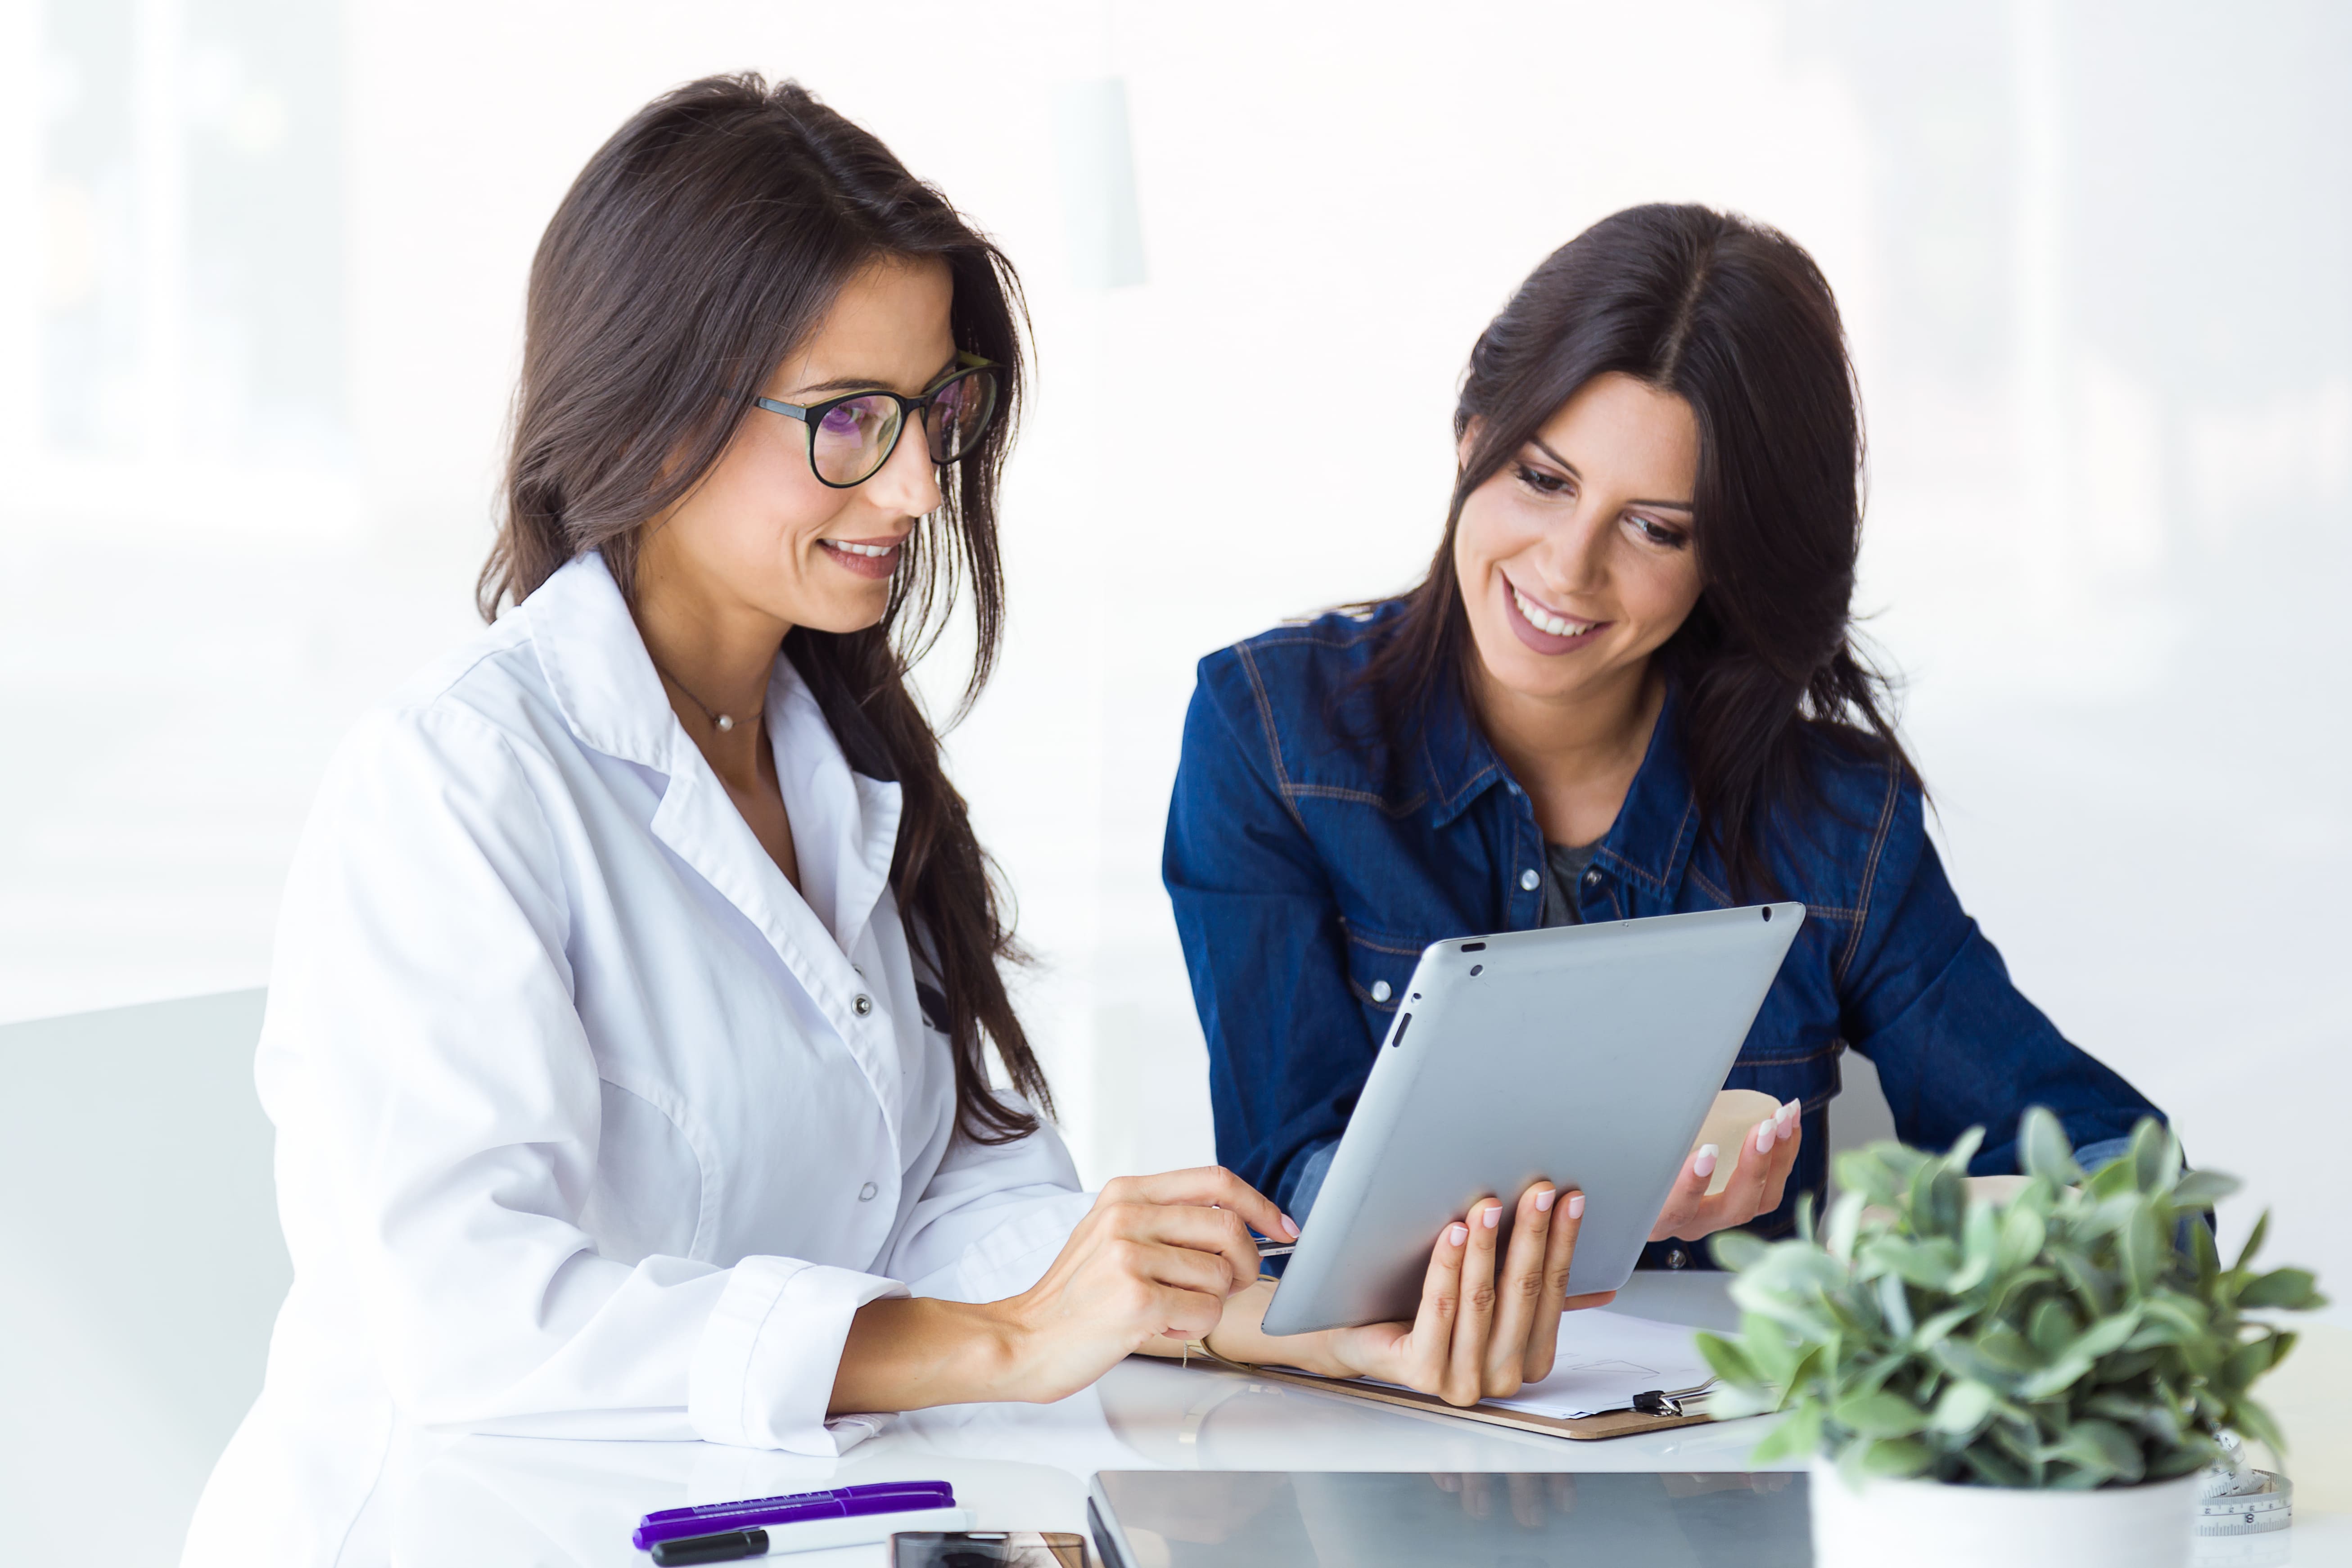 Há duas mulheres, uma é médica e outra é sua paciente. Ambas estão olhando para o tablet que a médica segura.